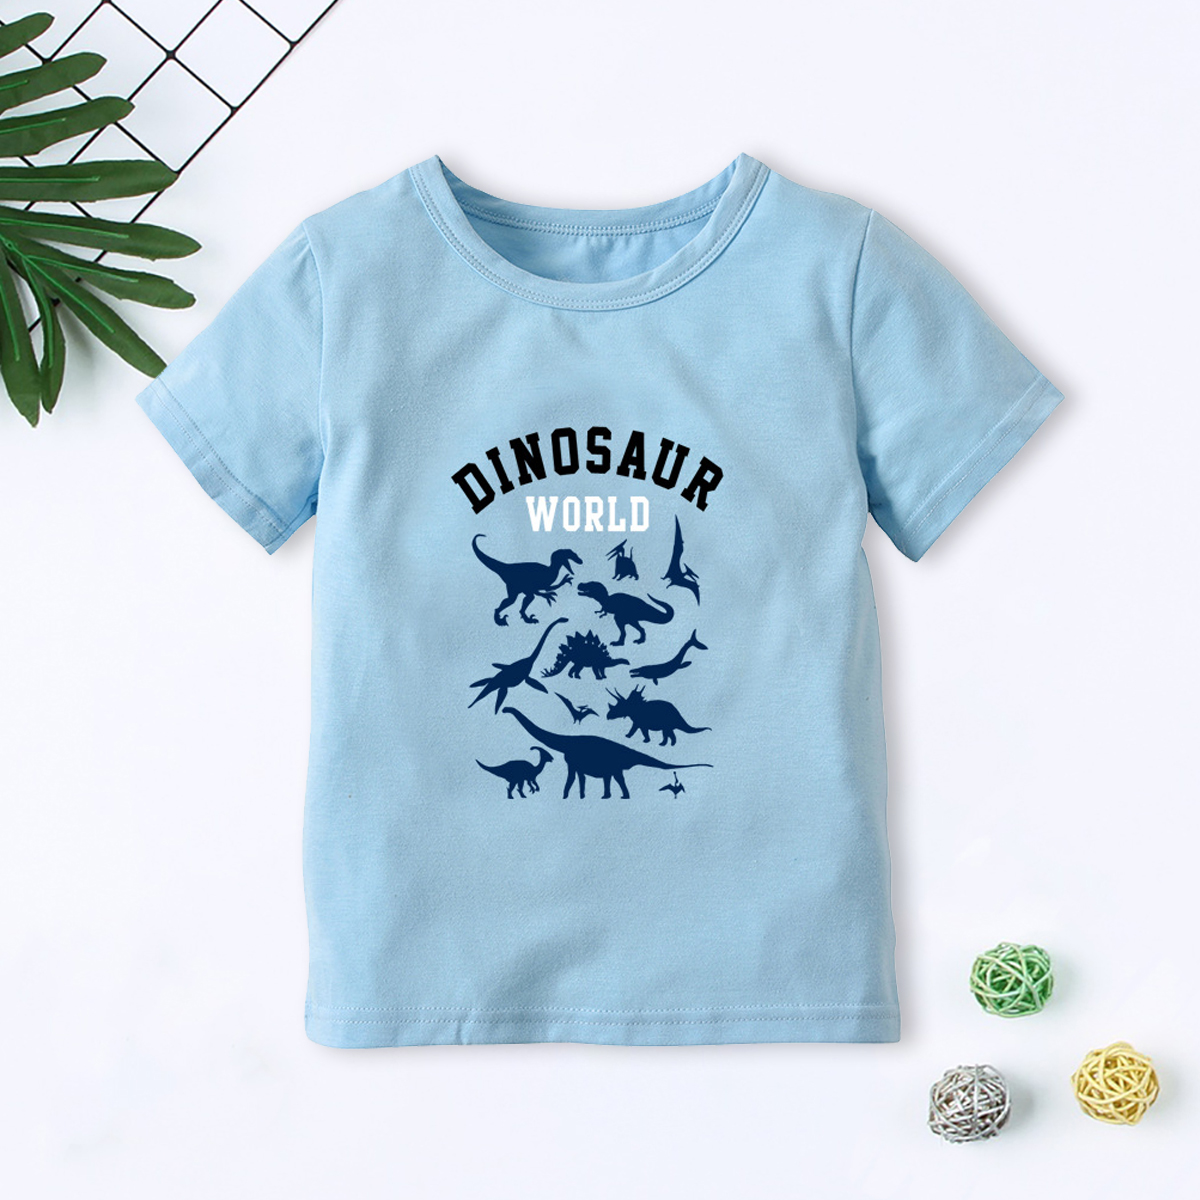 Dinosaur World Printed T-shirt